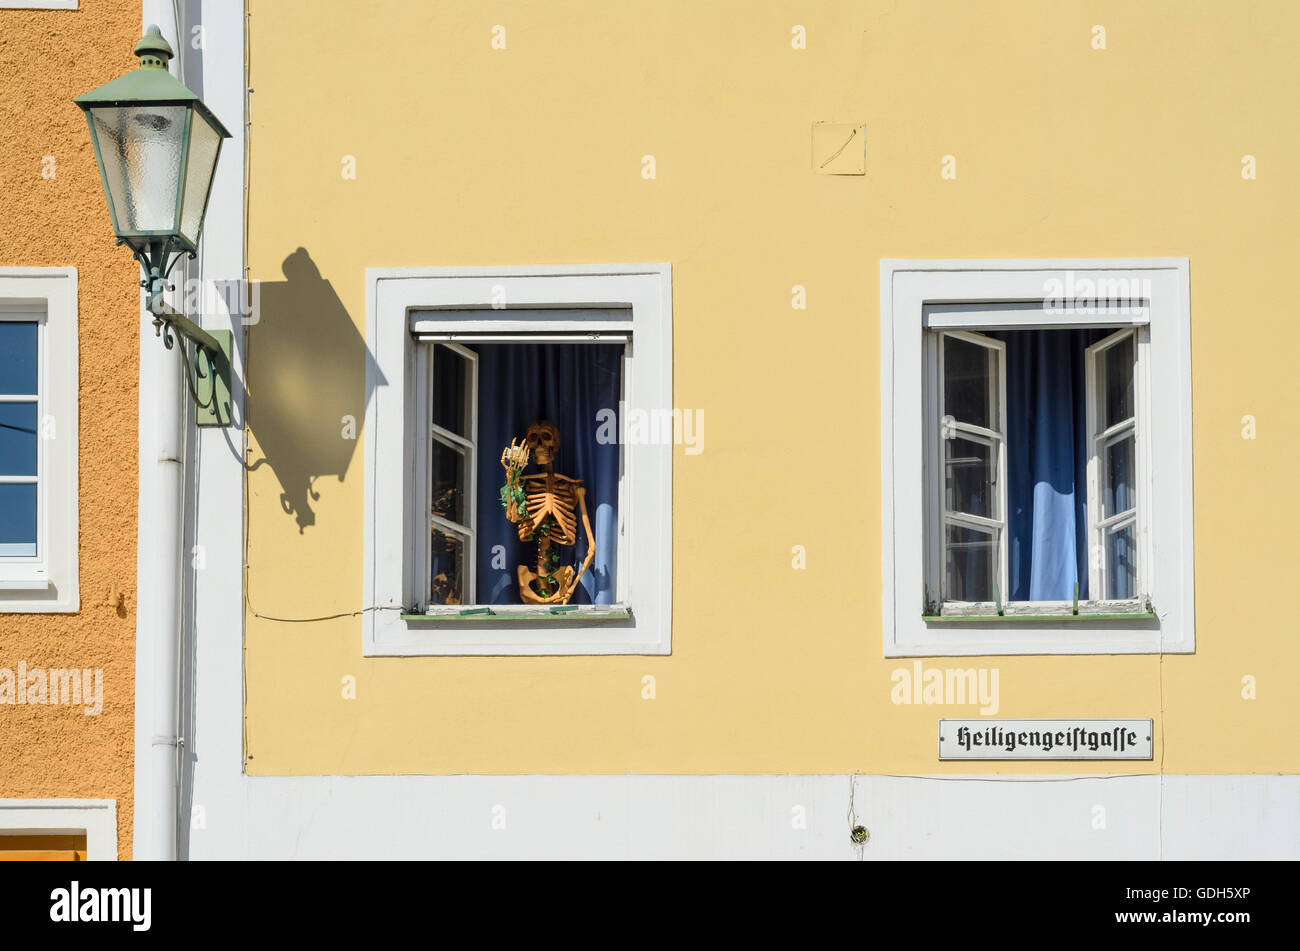 Freistadt: esqueleto humano en una ventana de un edificio residencial, Old Town, Austria Oberösterreich, Austria Superior, Mühlviertel Foto de stock